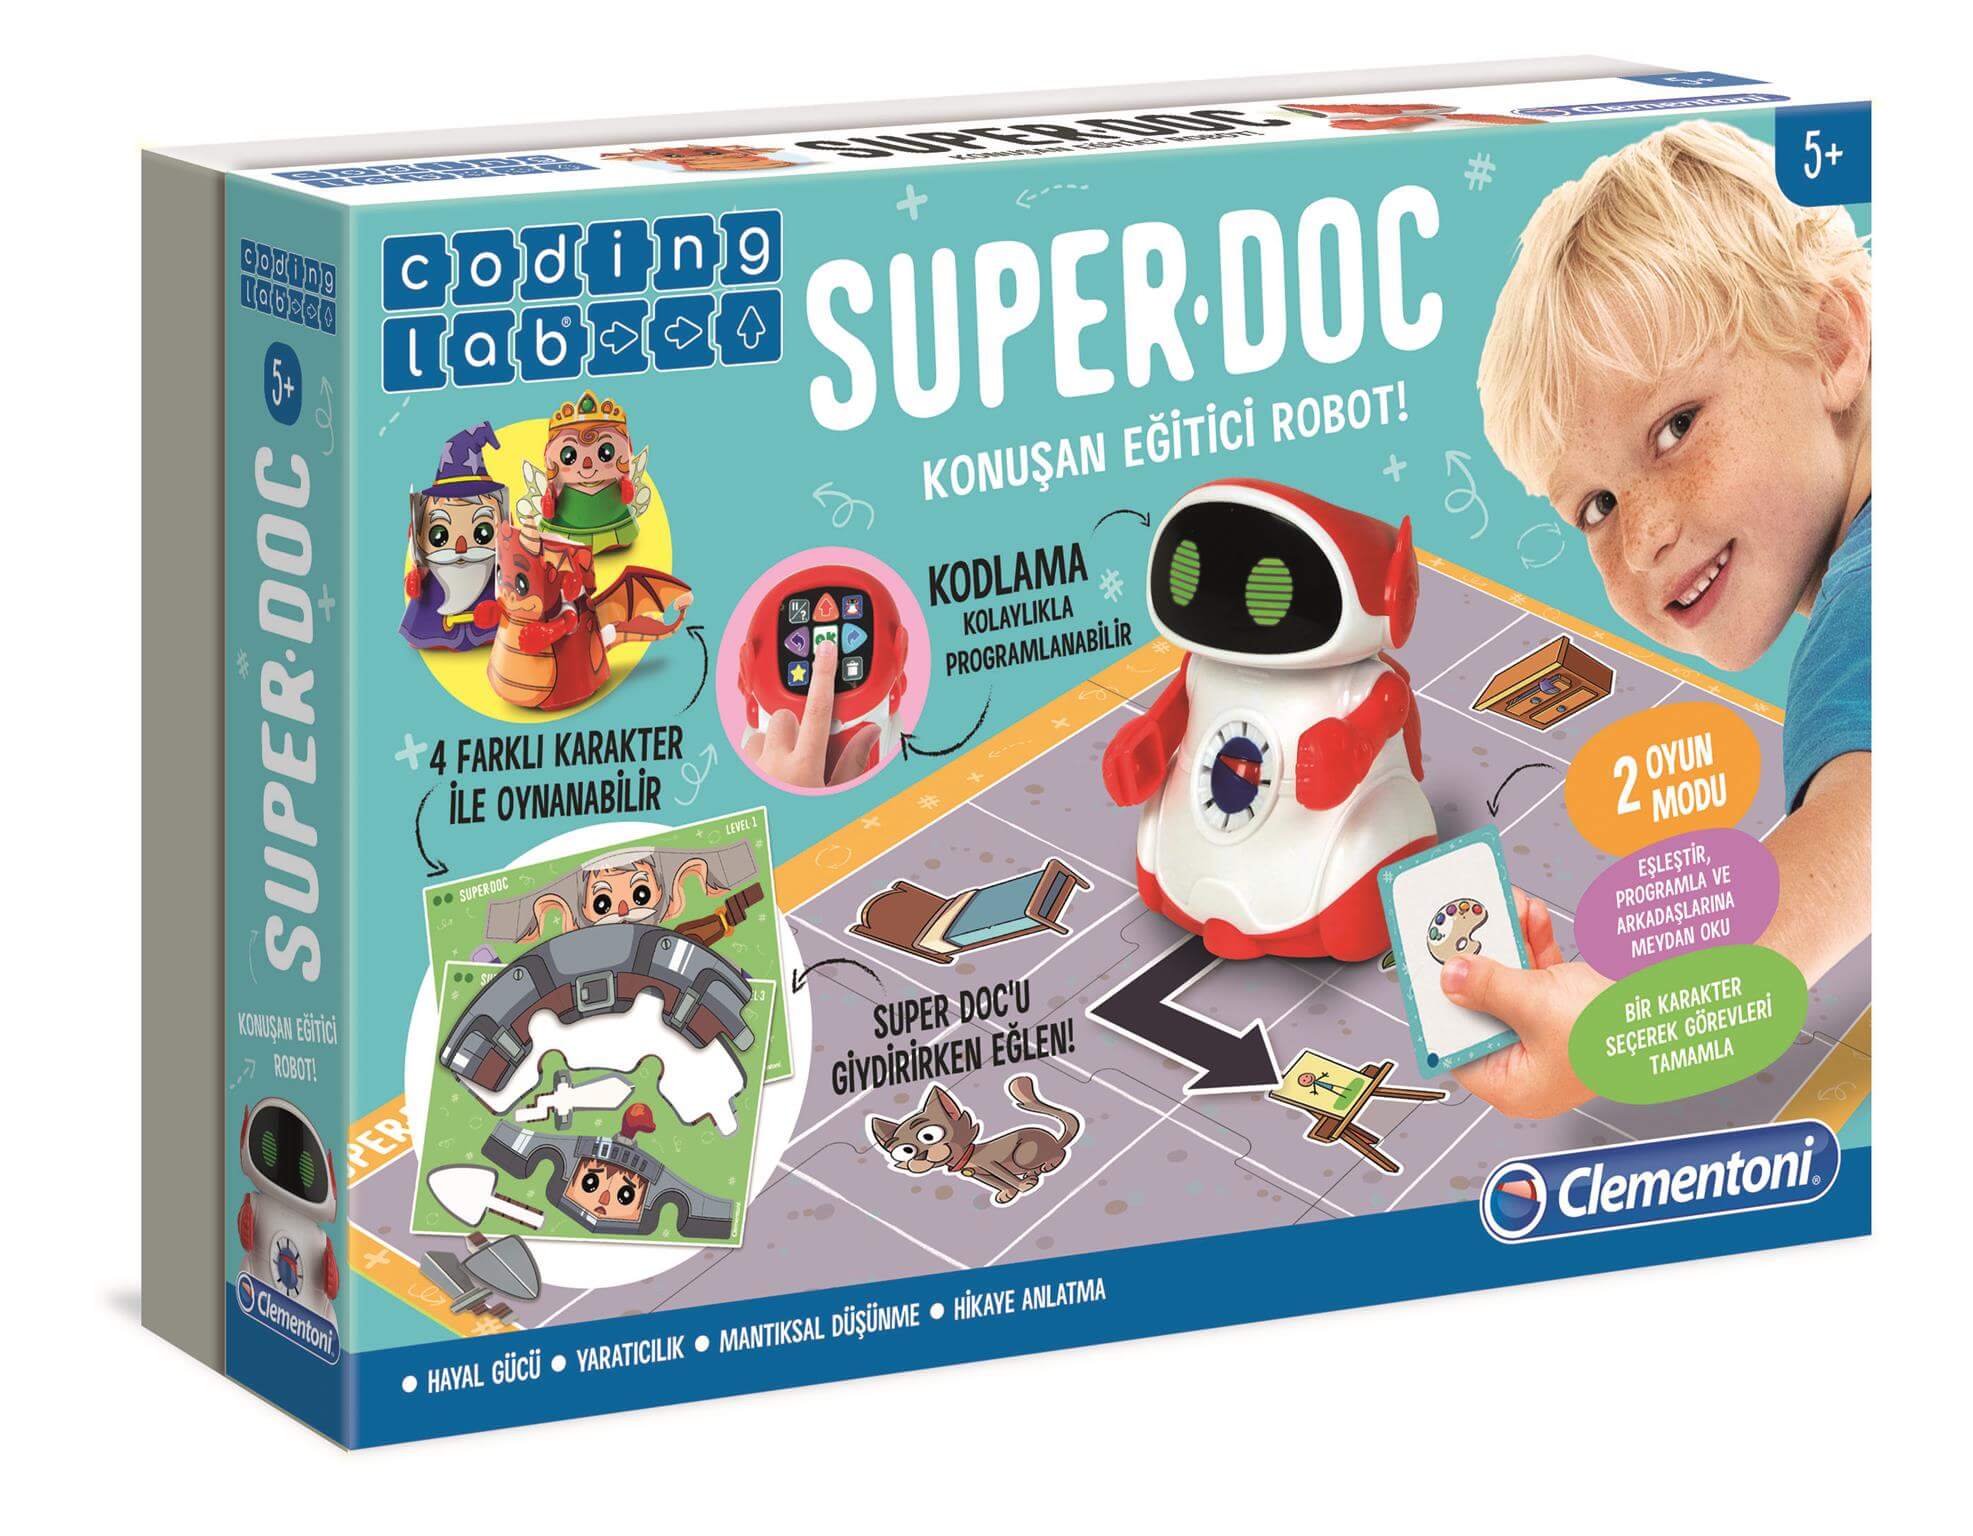 Super DOC-egitici-konusan-robot